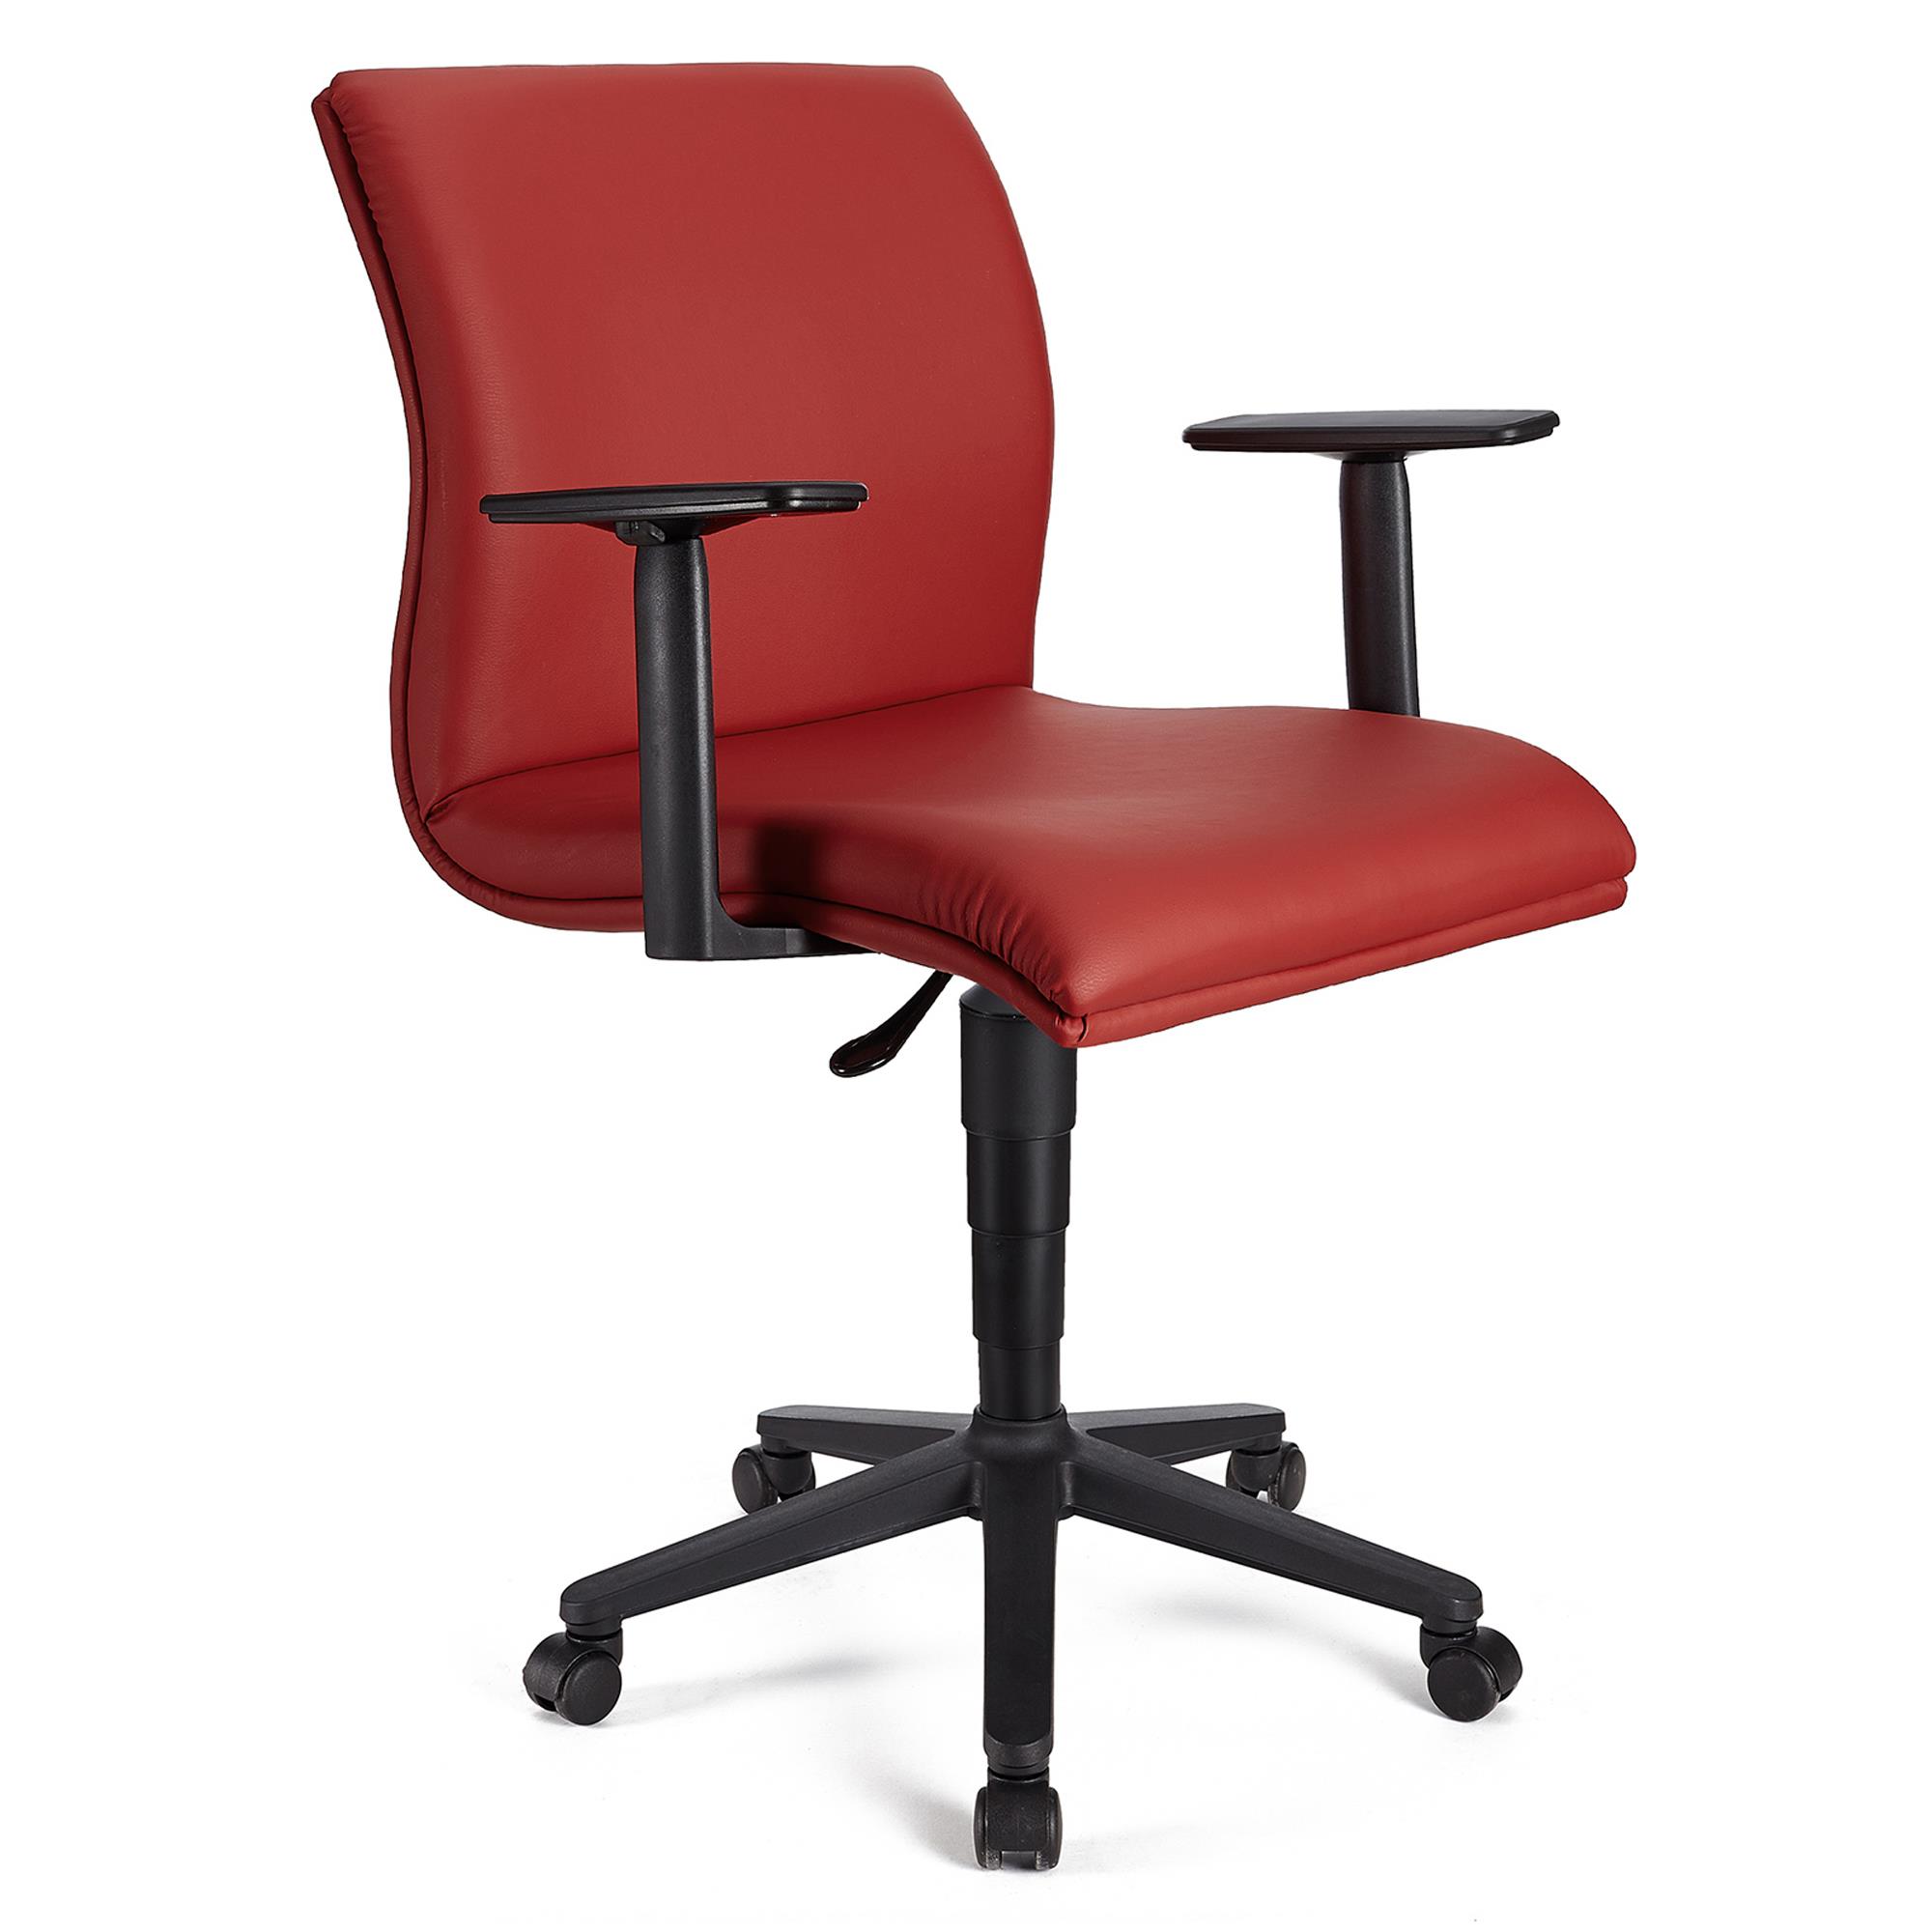 Cadeira de Escritório ANIBAL BASE PELE, Braços Ajustáveis, Acolchoado em Pele Vermelho